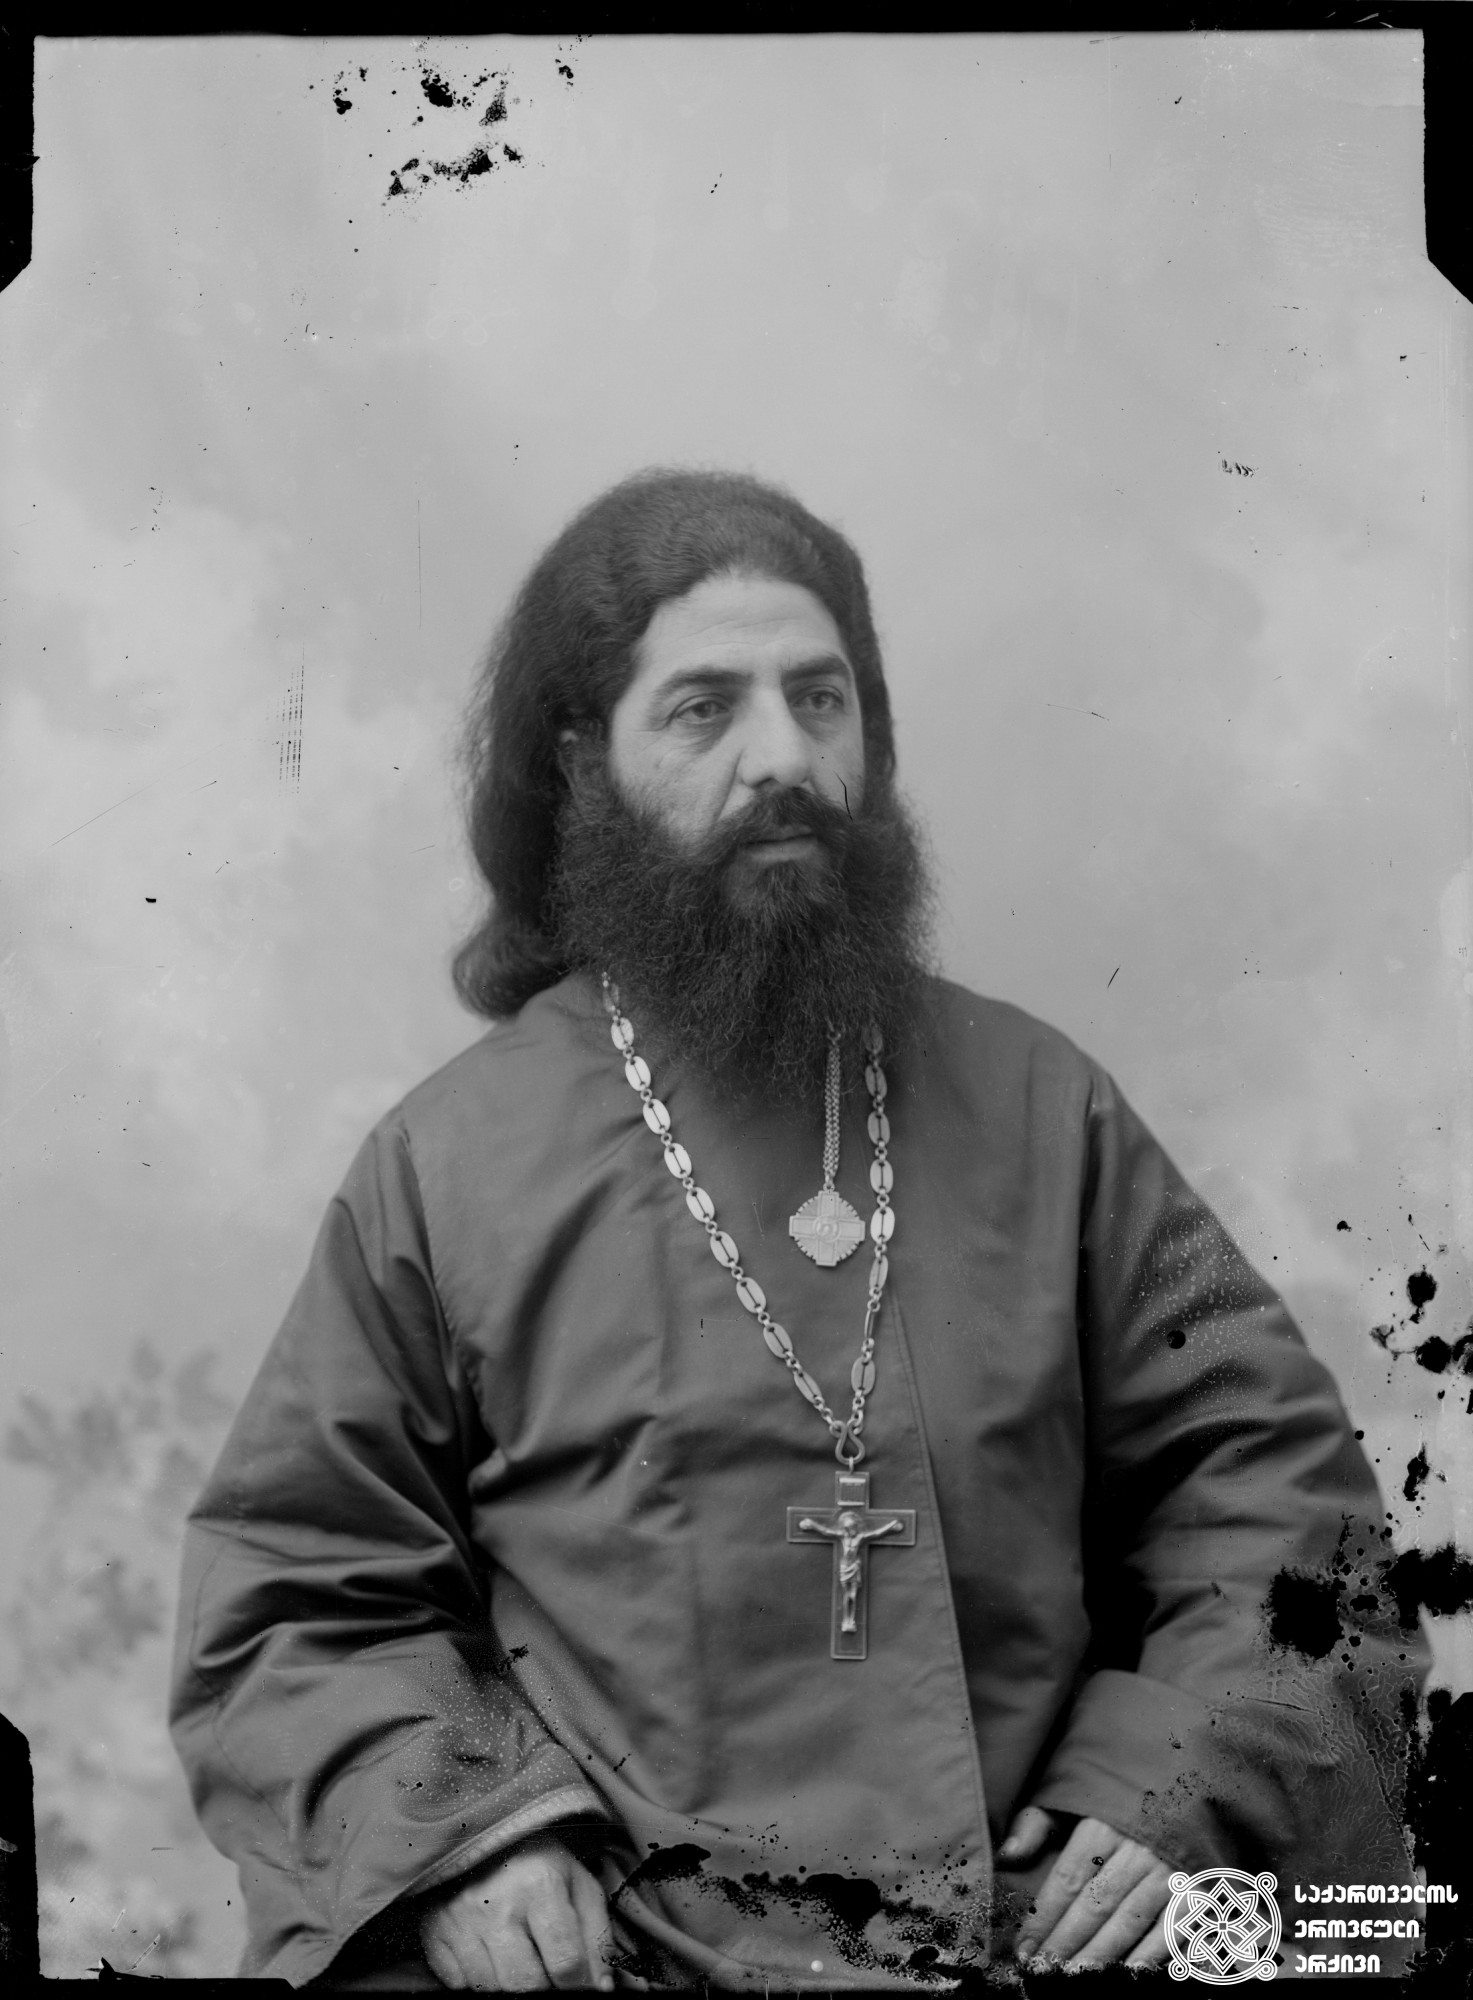 ეპისკოპოსი ნესტორ ყუბანეიშვილი (1853-1938). <br>
მინის ნეგატივი 12X16. <br>
Bishop Nestor Kubaneishvili (1853-1938). <br>
Glass negative 12X16. <br>